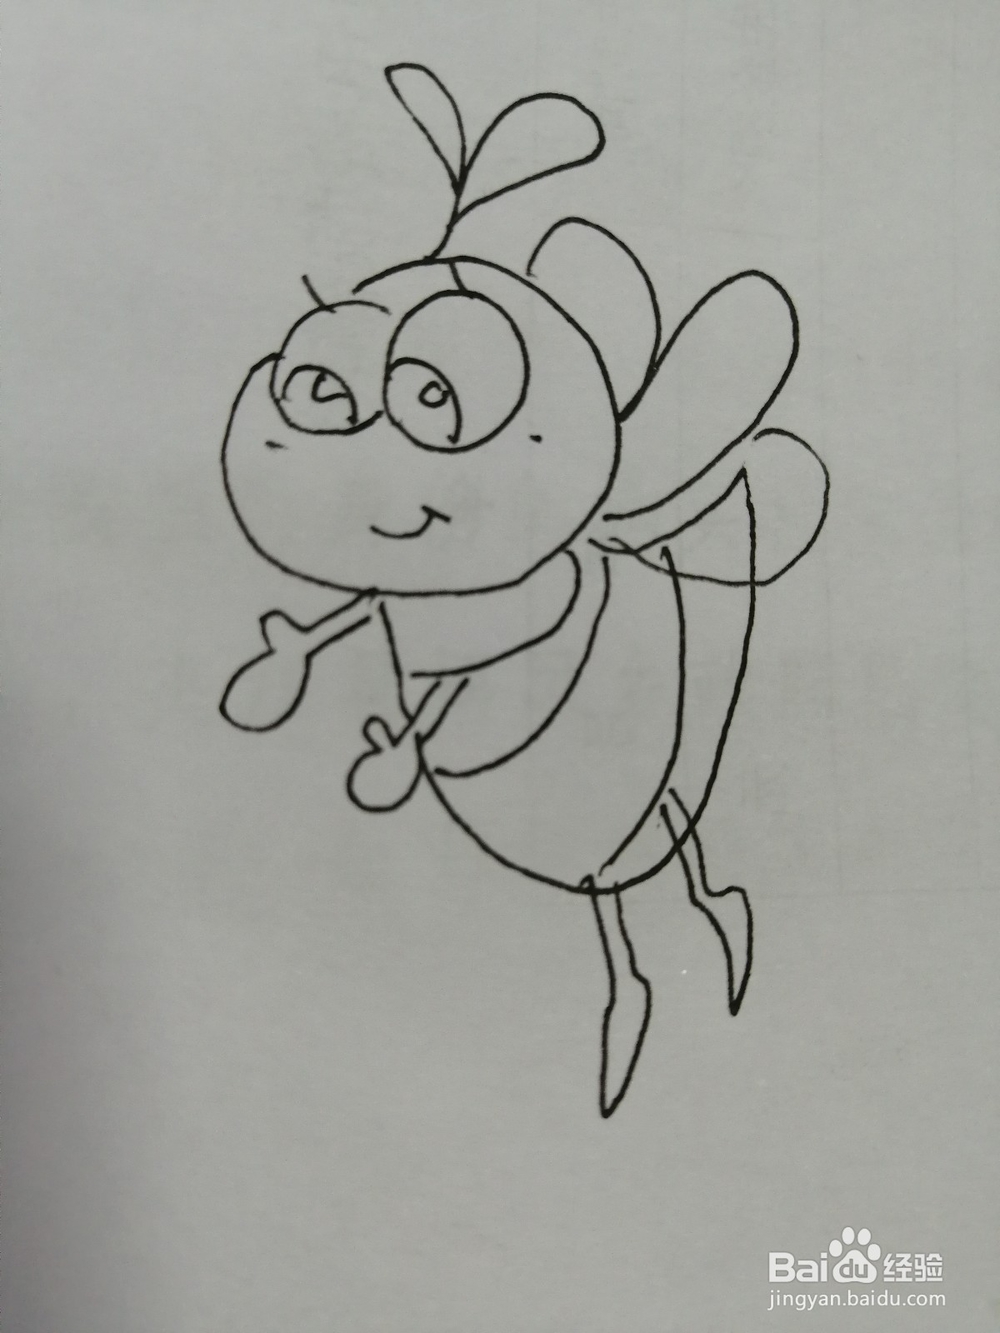 <b>可爱的小蜜蜂怎么画</b>